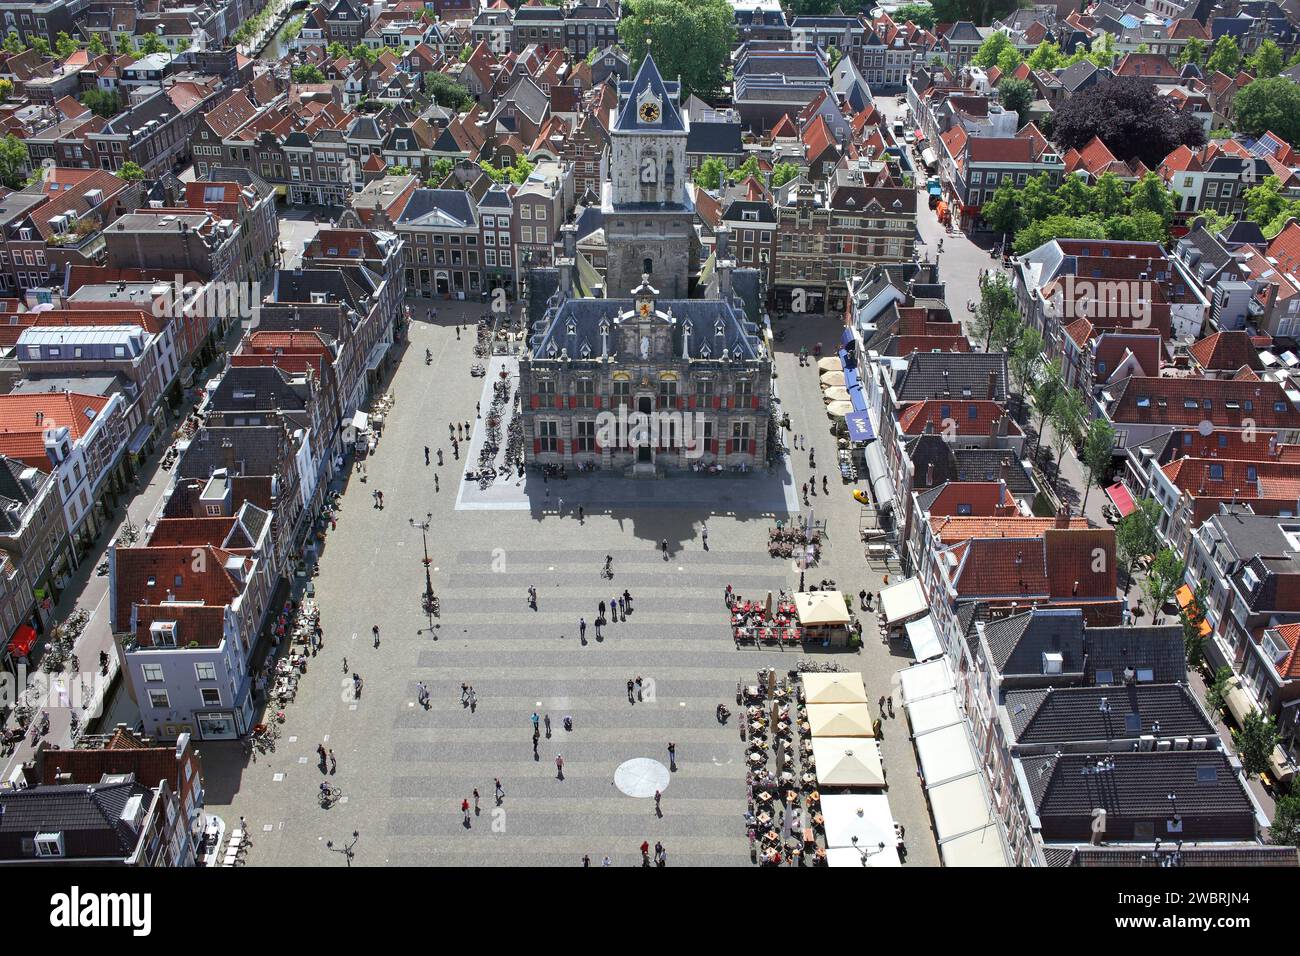 Blick auf den Marktplatz in Delft mit dem Rathaus im Zentrum. Vom Turm der Neuen Kirche aus gesehen. Stockfoto